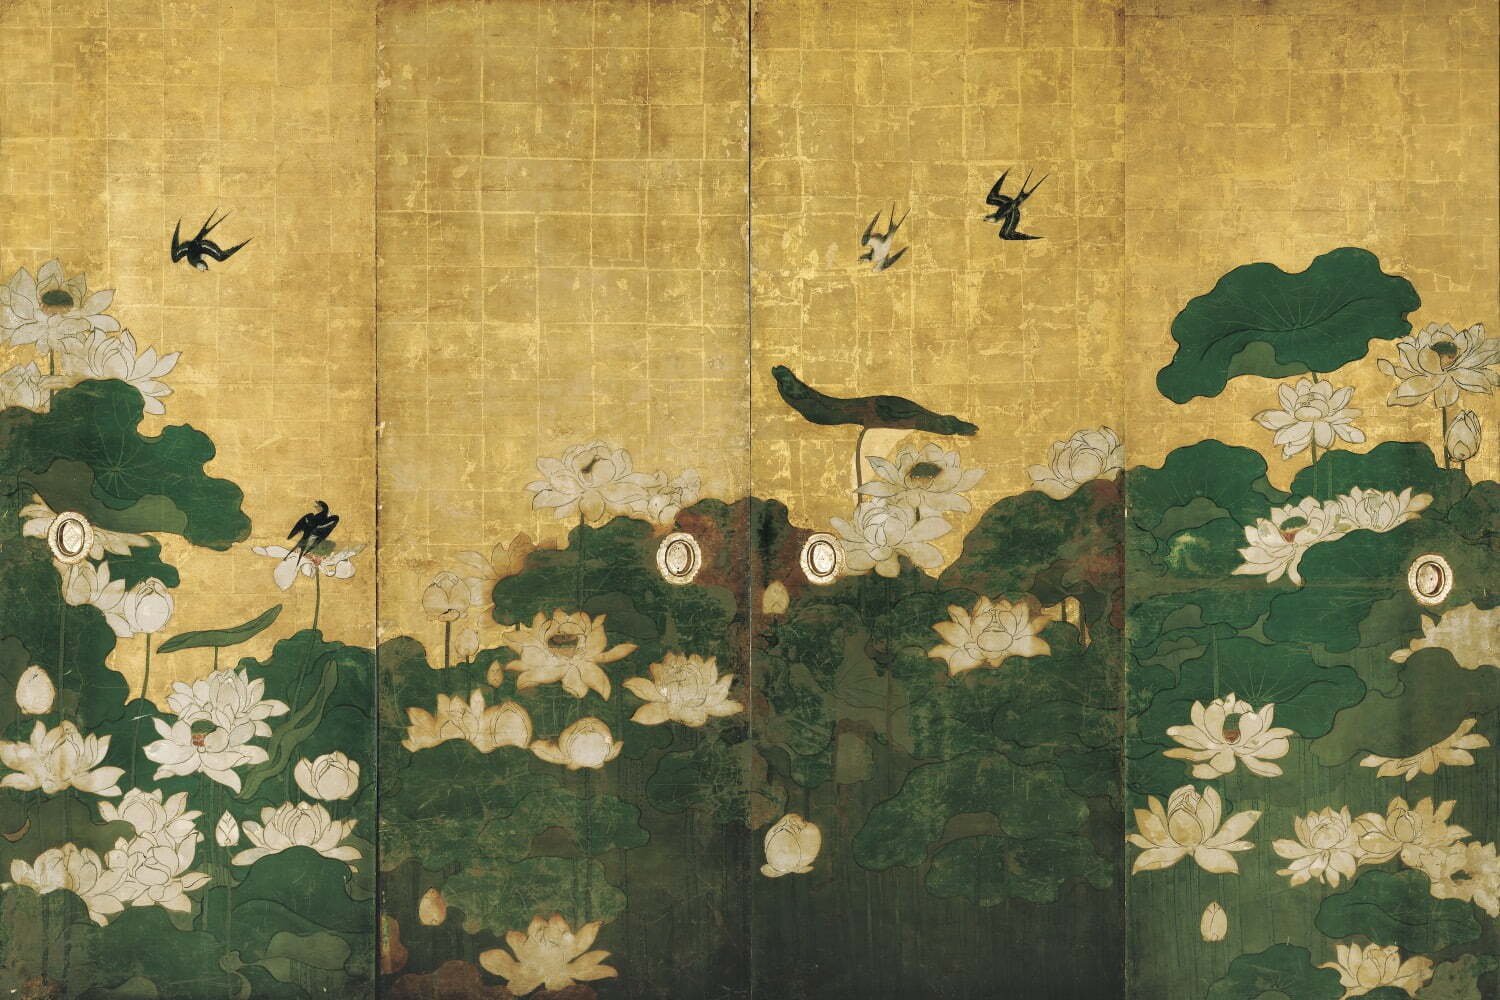 大茶人・武士「織田有楽斎」の展覧会が京都文化博物館で - 人物像を